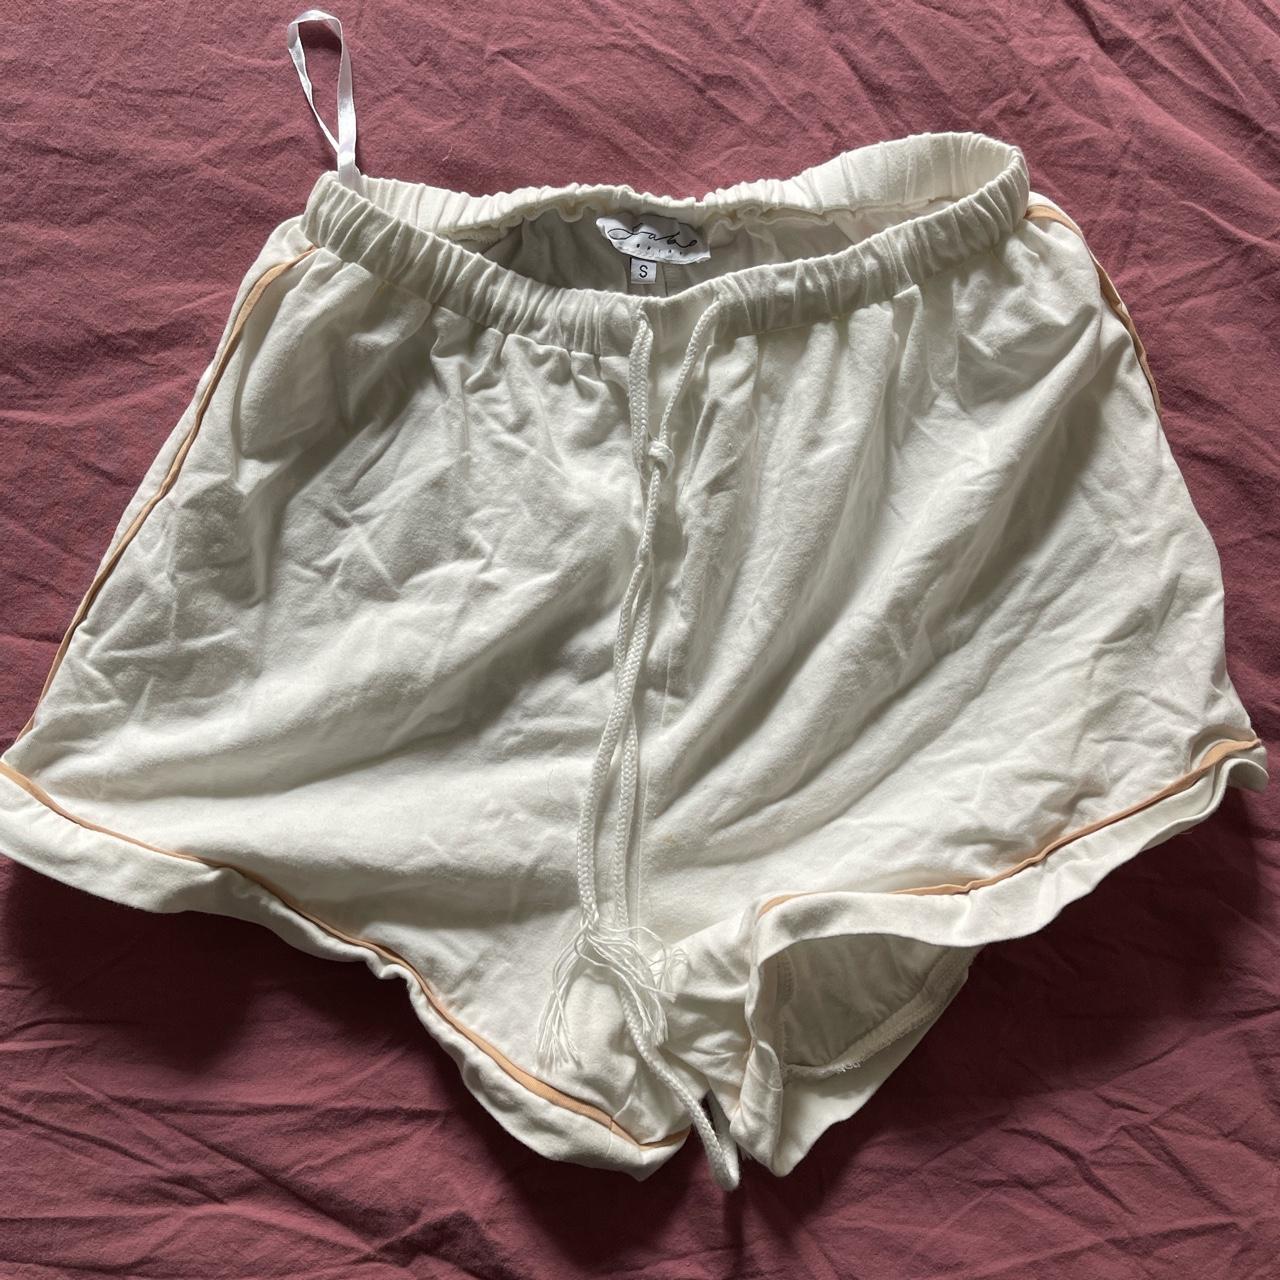 Product Image 1 - High Waisted Sabo Shorts. Size: